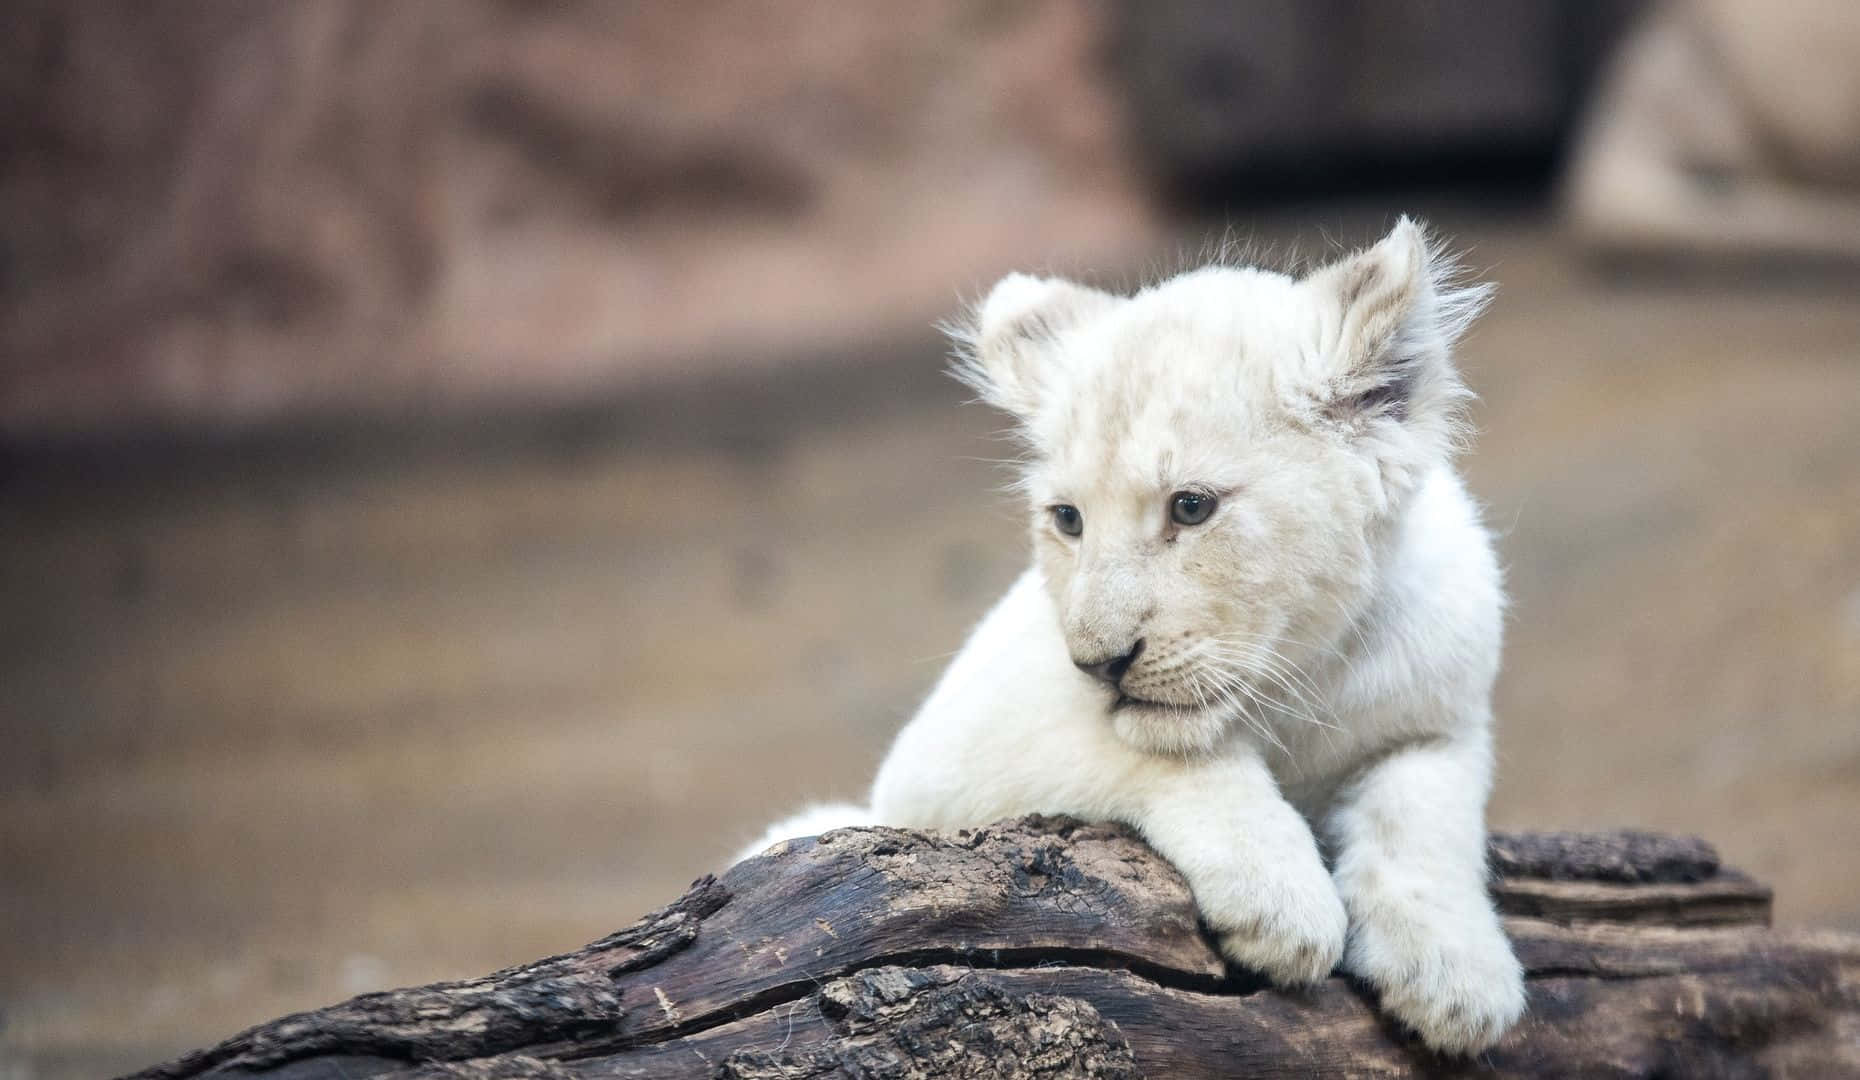 Hintergrundbildmit Baby Löwen